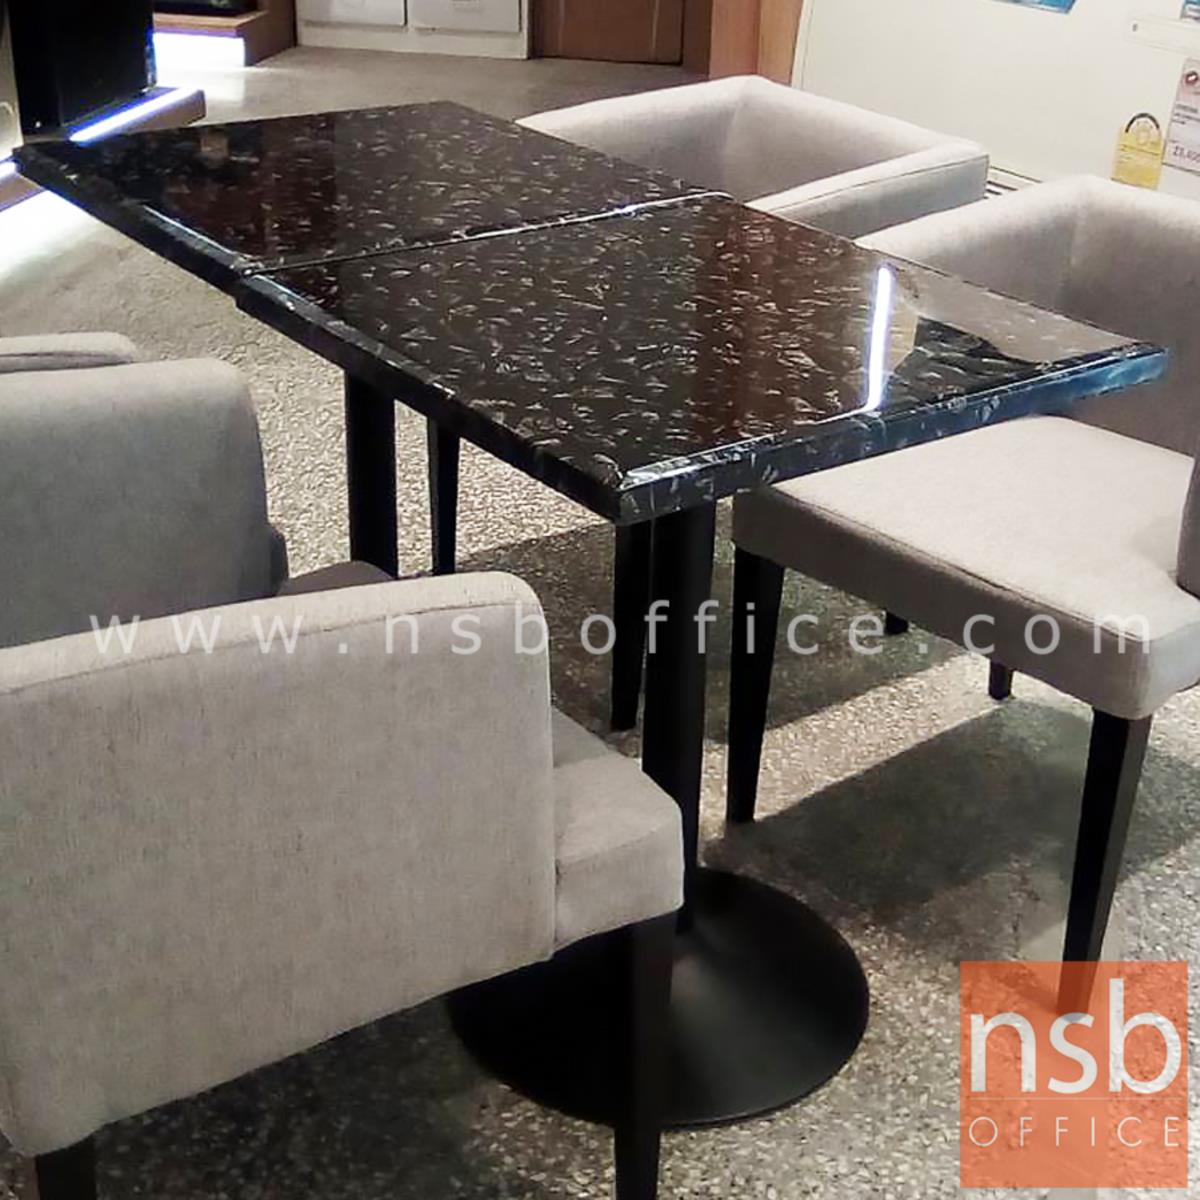 โต๊ะหน้าหินอ่อน รุ่น Beckinsale (เบ็กคินเซล) ขนาด 60W ,60Di cm.  โครงเหล็กเคลือบสีดำ